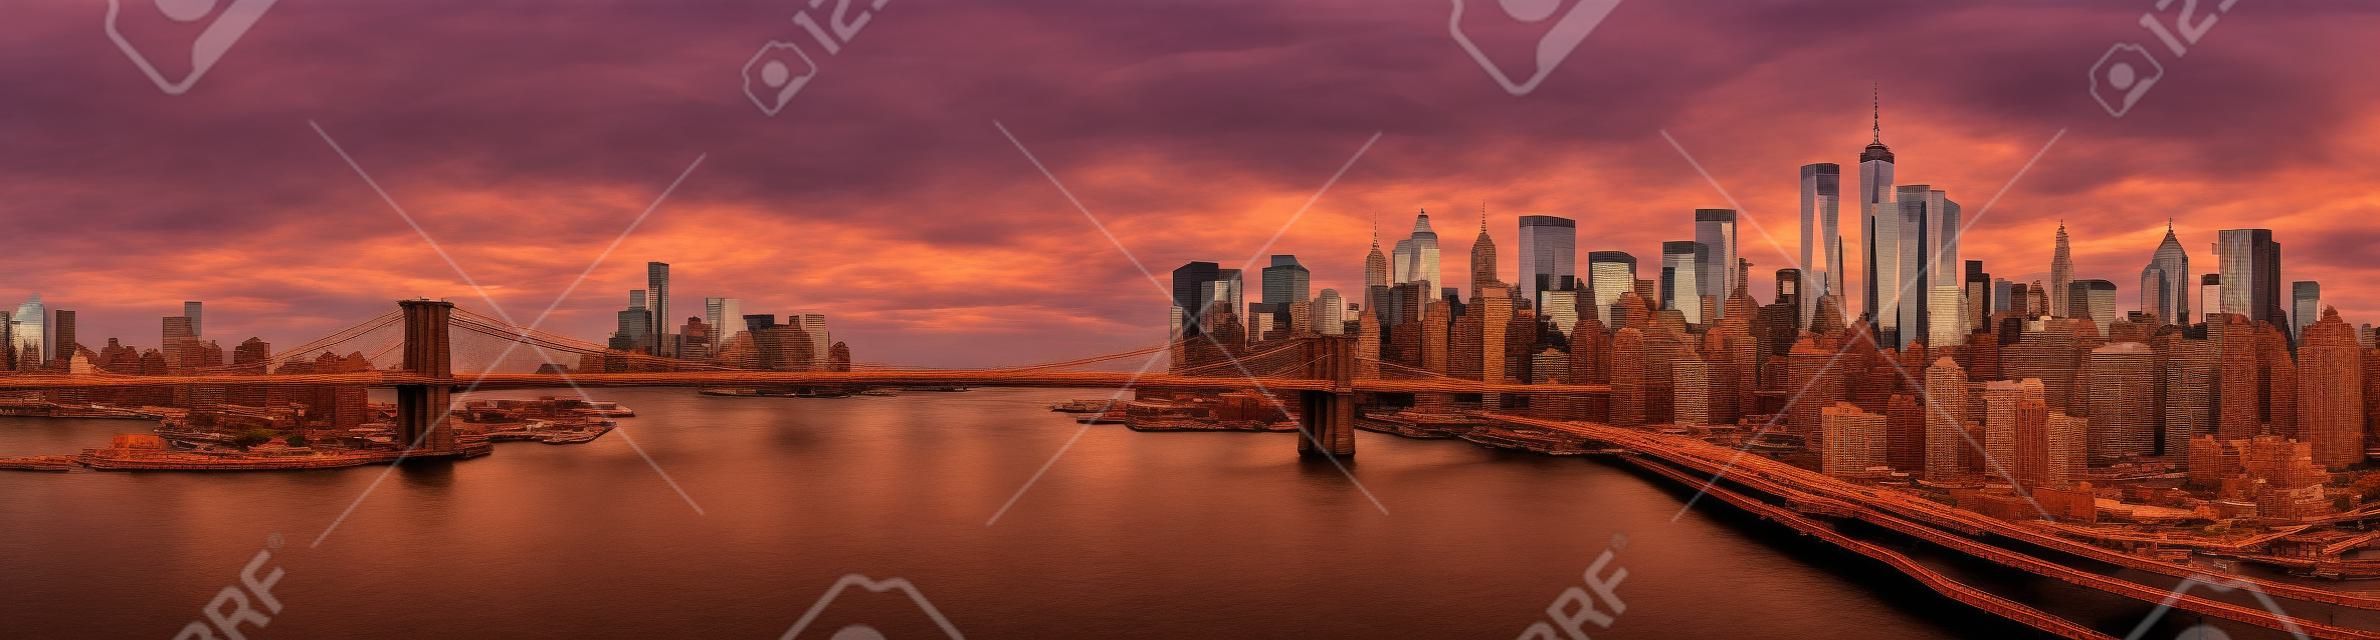 Puente de Brooklyn panorama al atardecer. El hito icónico extiende entre Brooklyn y el horizonte de Nueva York Distrito financiero, dominado por la Torre de la Libertad.